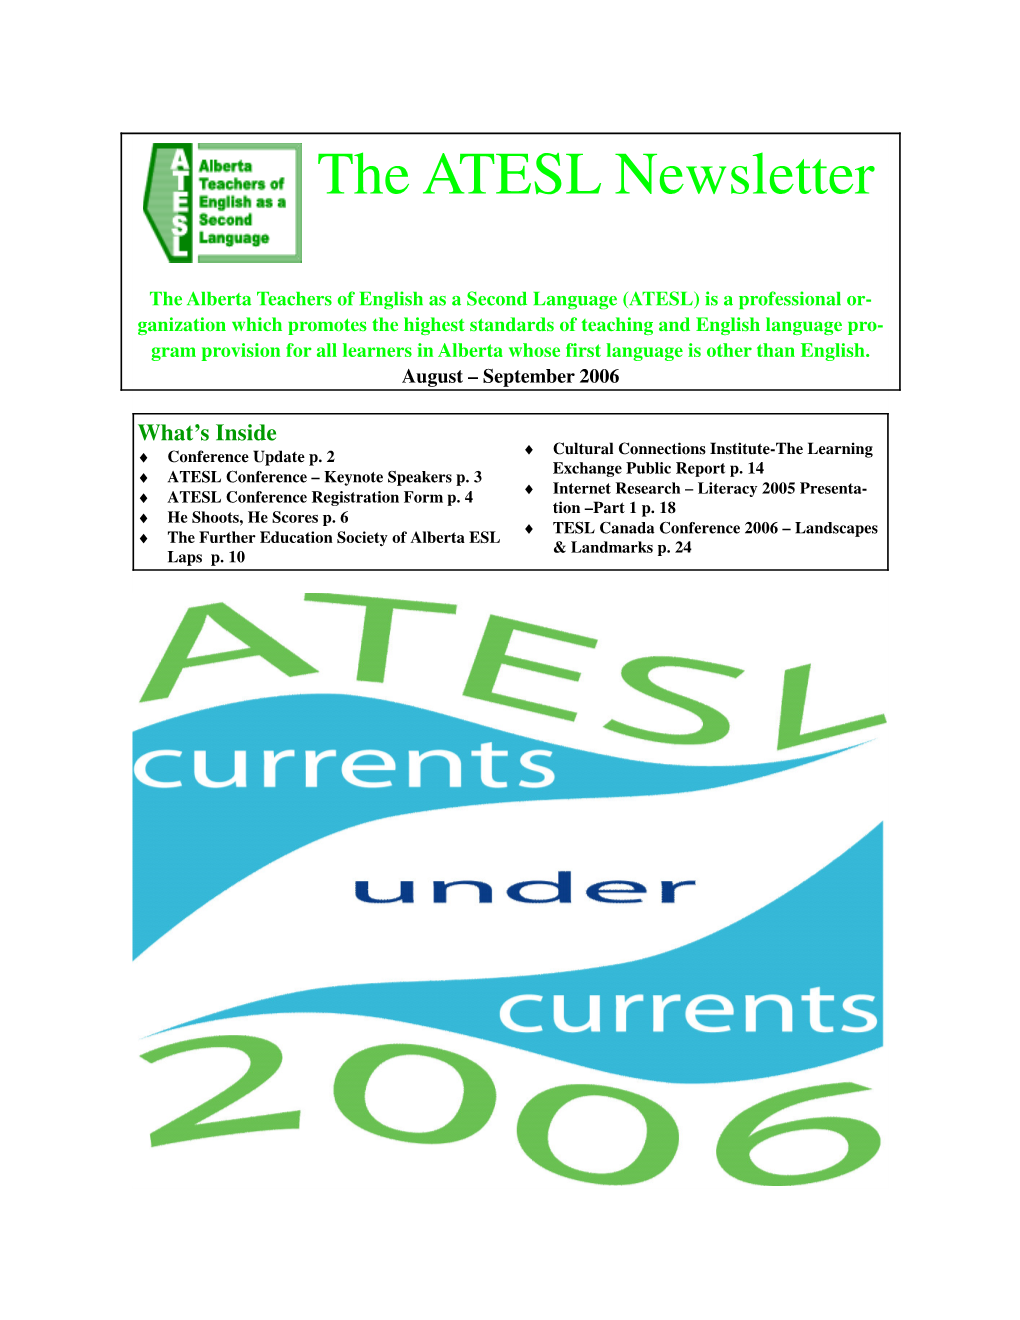 Keynote Speakers, ATESL Conference Registration Form, He